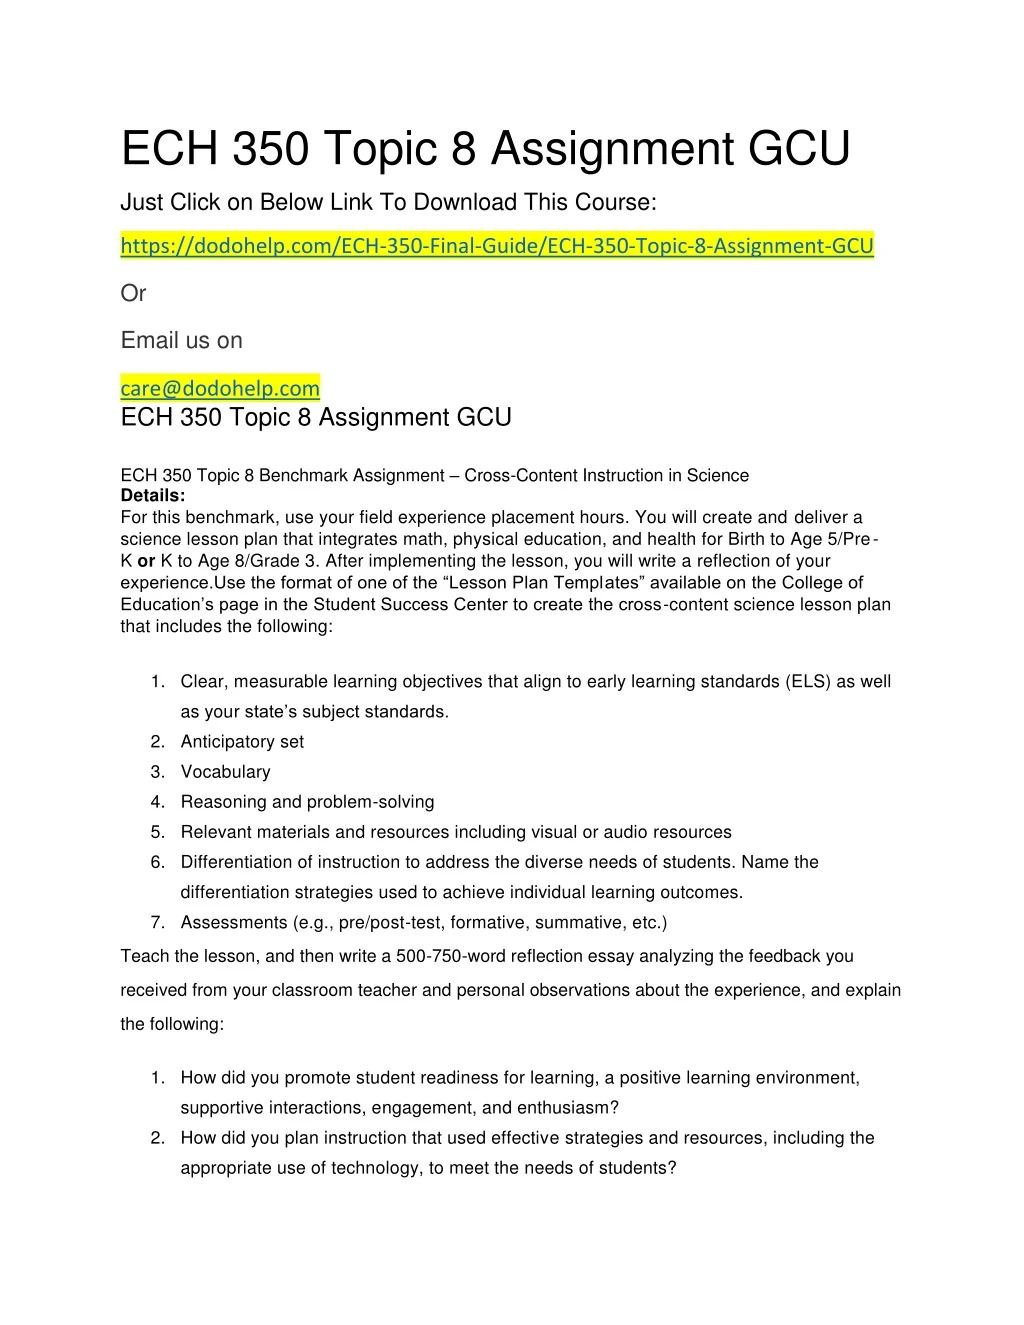 ech 350 topic 8 assignment gcu